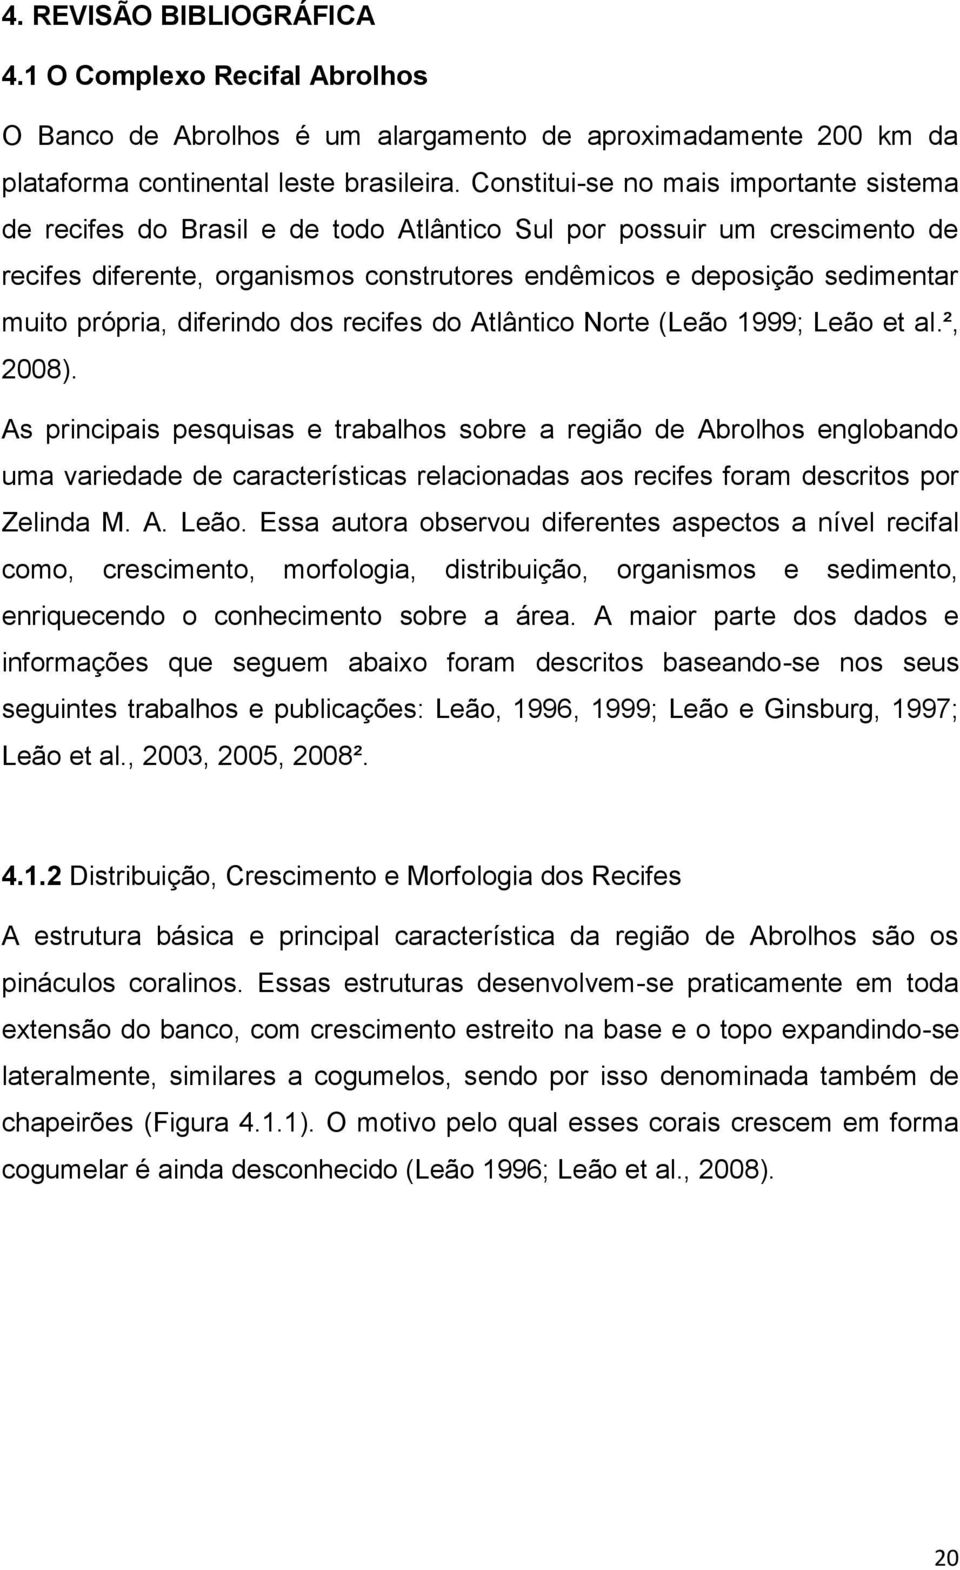 própria, diferindo dos recifes do Atlântico Norte (Leão 1999; Leão et al.², 2008).